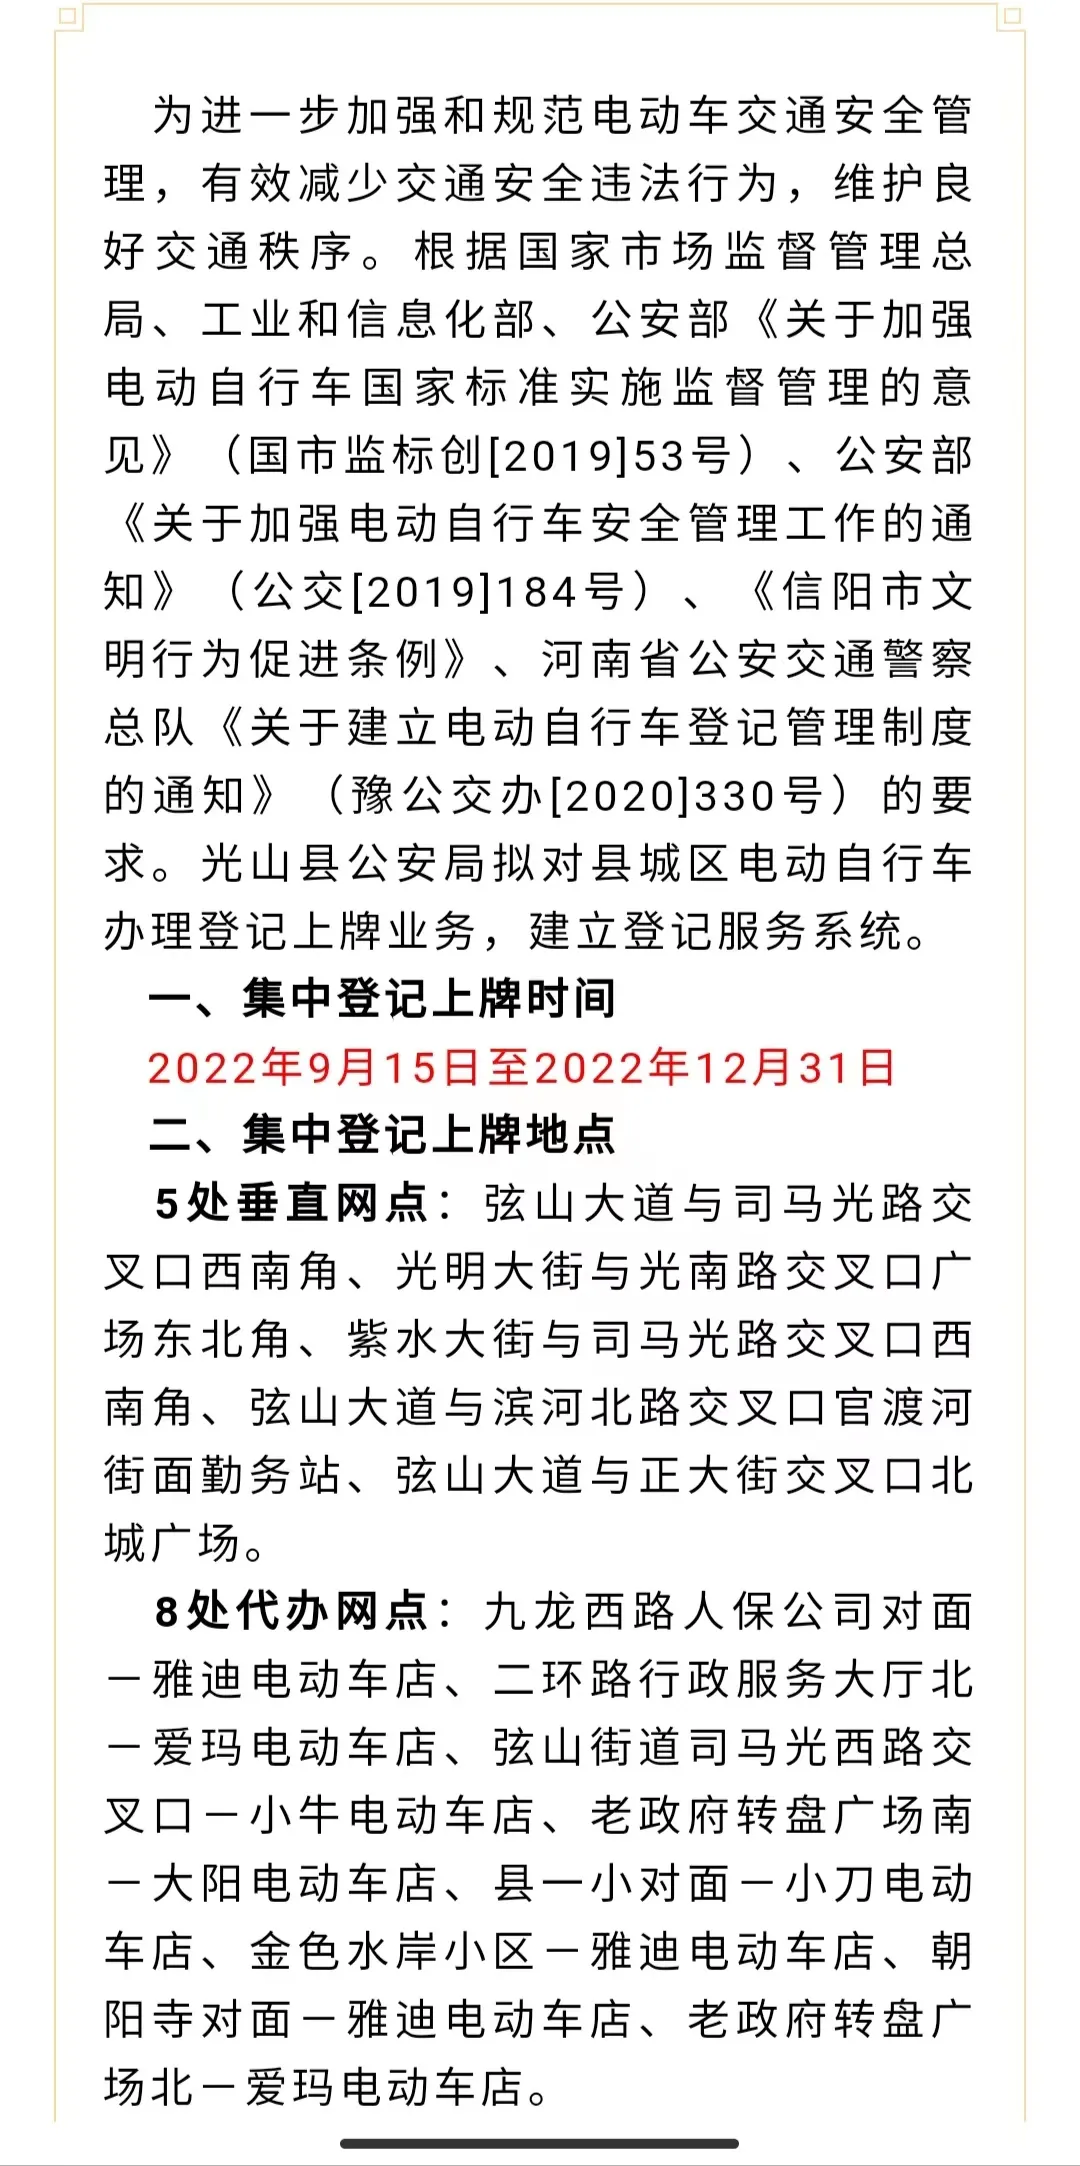 重要消息关于在光山县城区实施电动自行车登记上牌的通告光山 信阳头条